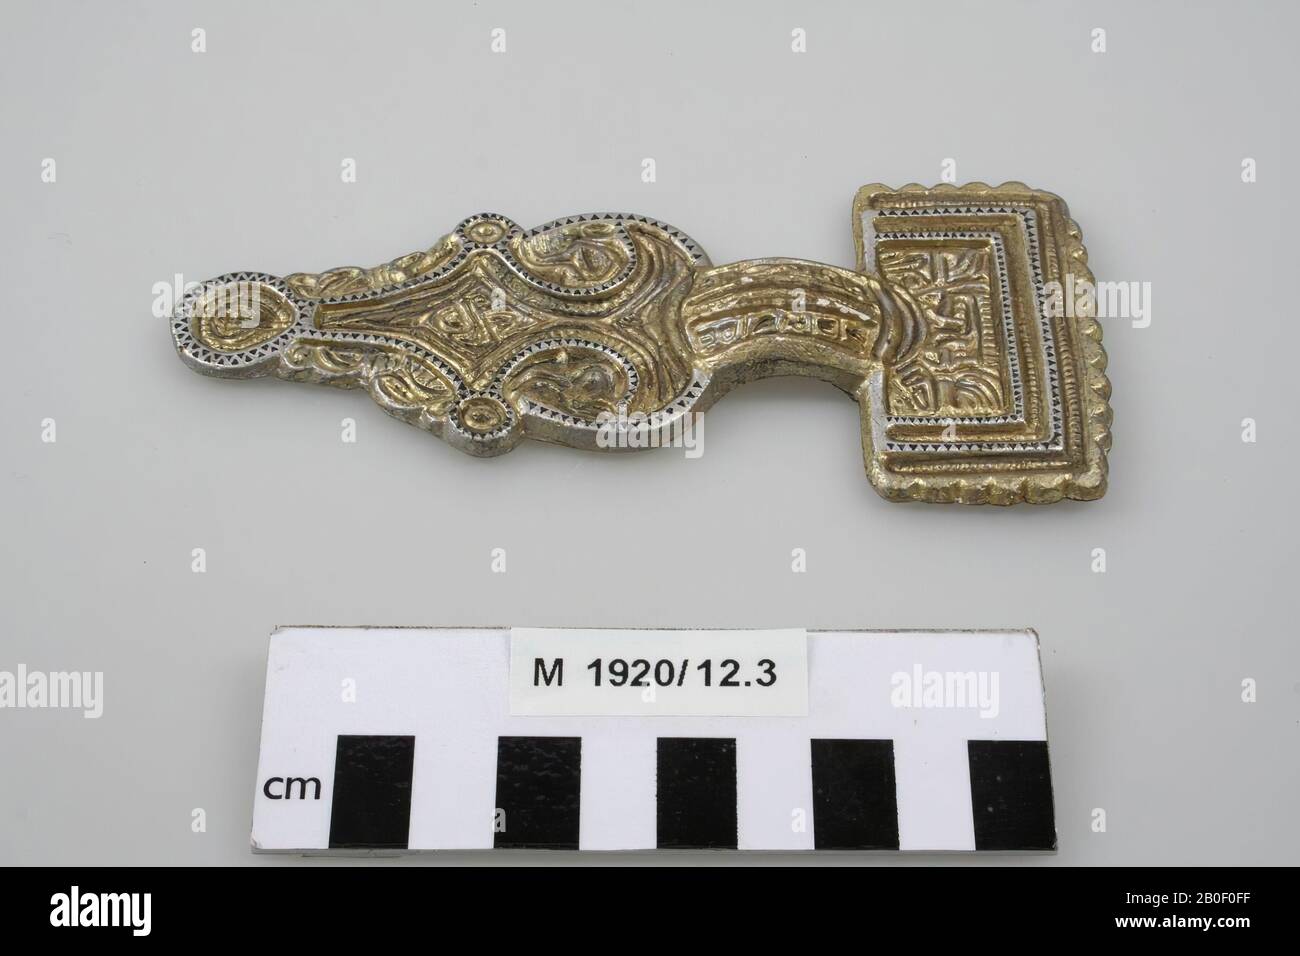 Moulage d'un fibula décoré, peint en argent et en or., Casting, fibula, plâtre, 13,9 x 6,2 x 1,1 cm, médiéval, Allemagne, inconnu, inconnu, inconnu Banque D'Images